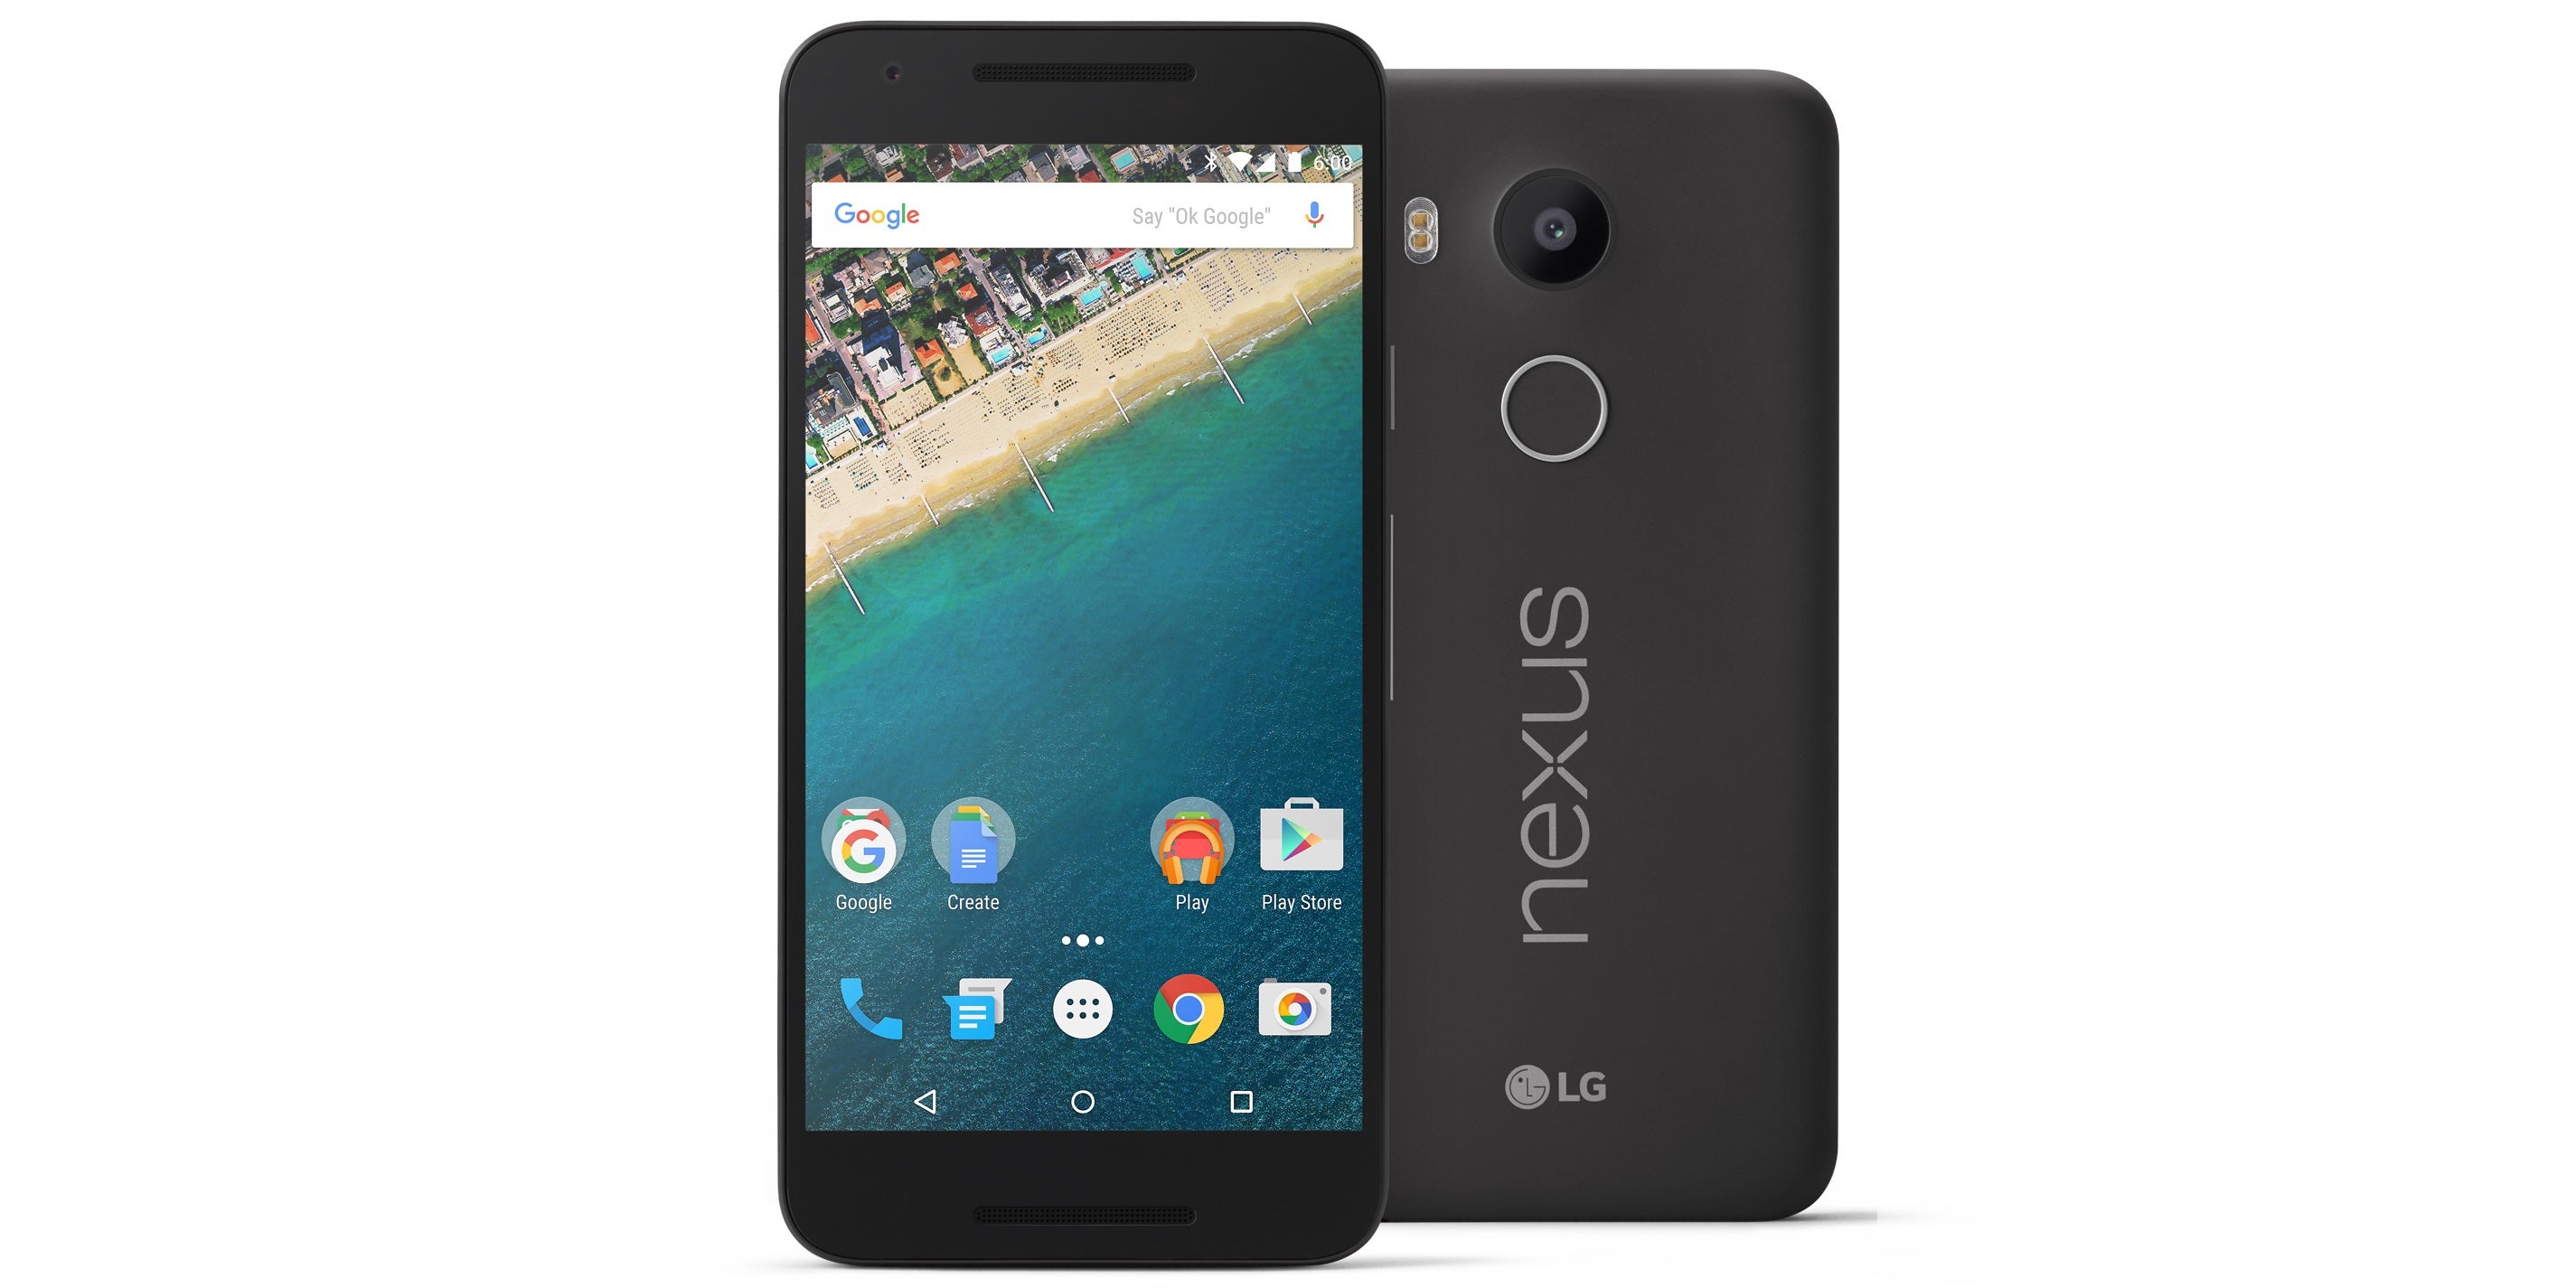 Google Nexus 5X: the specs review